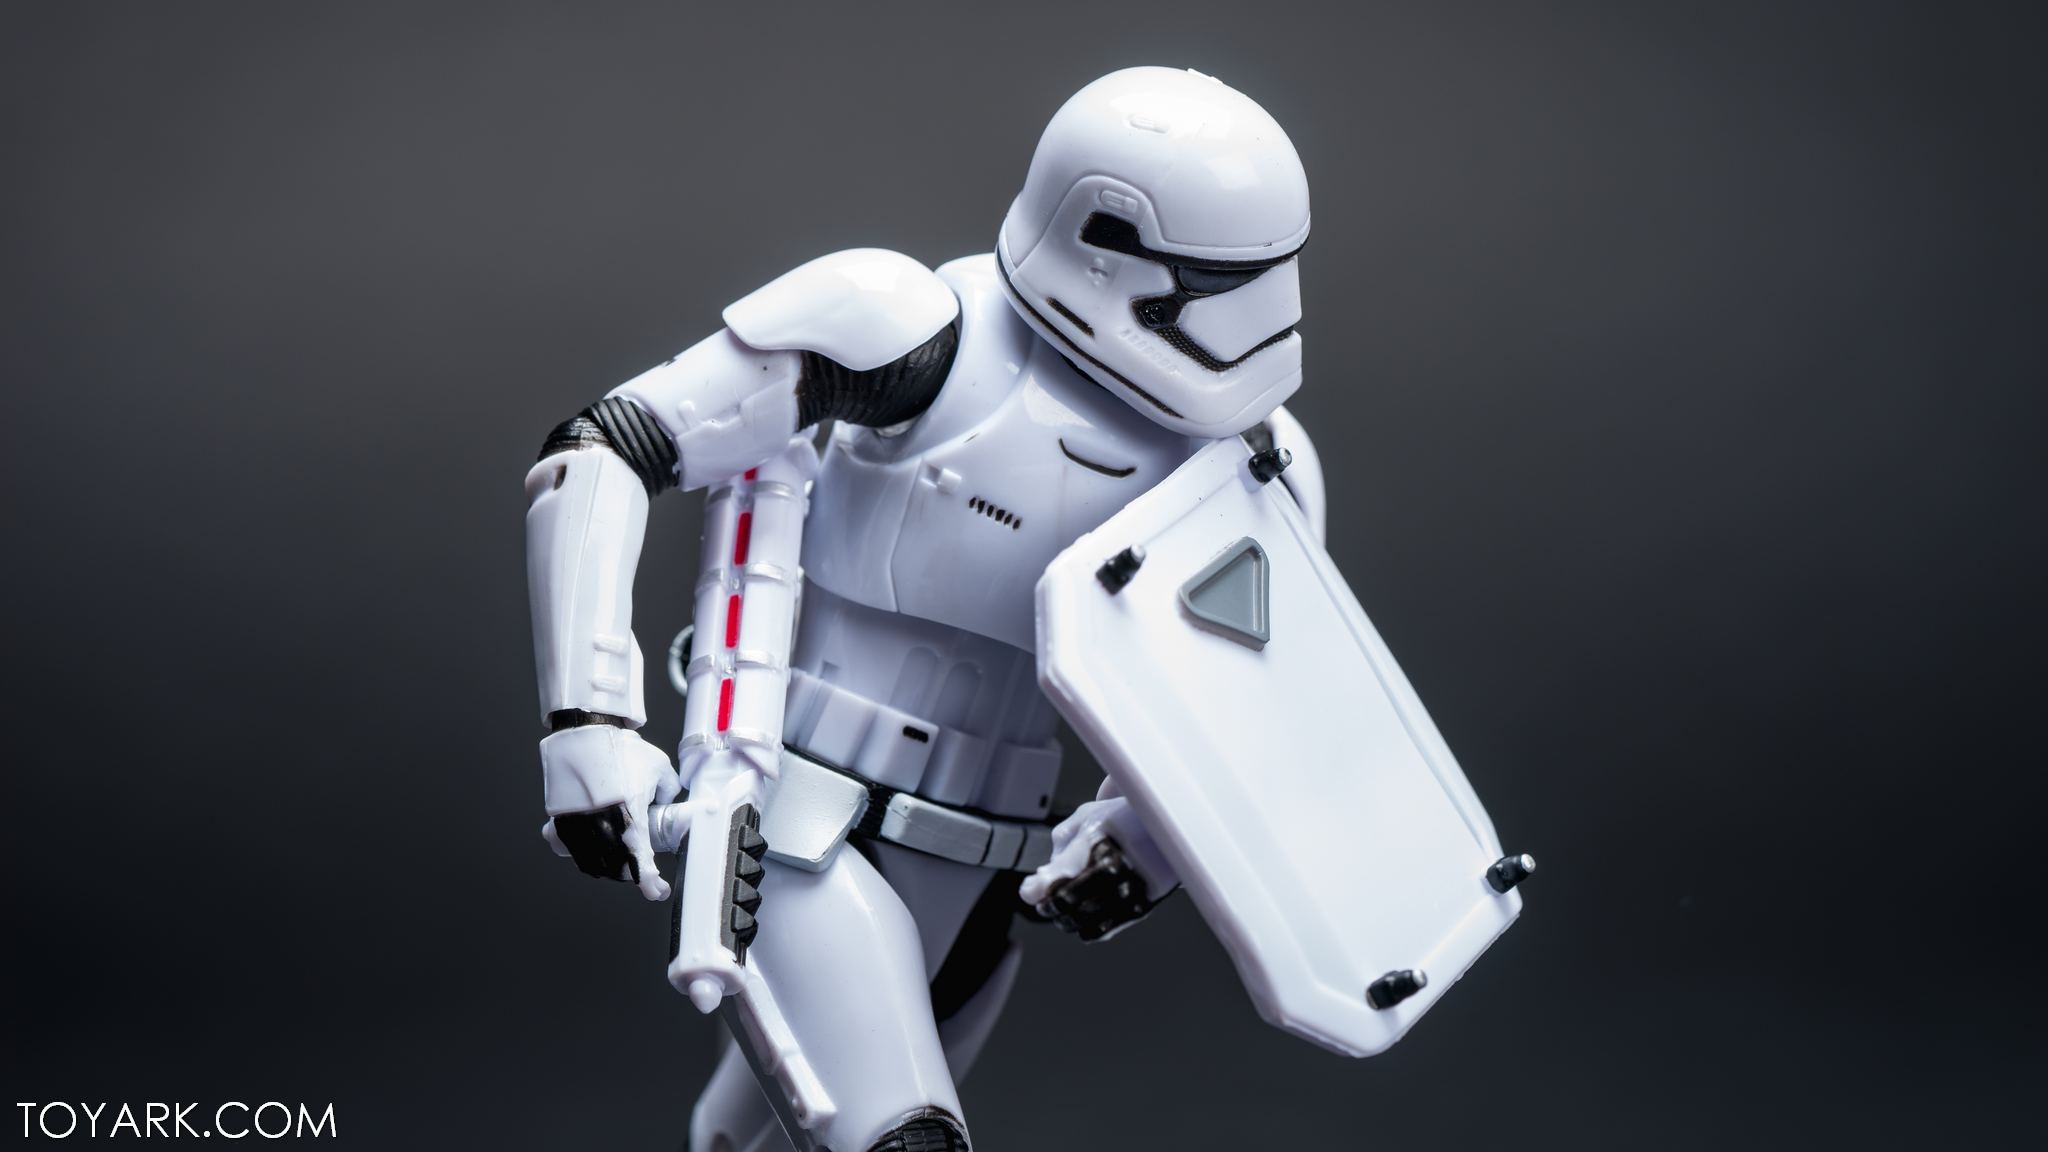 cool stormtrooper wallpaper,robot,figura de acción,juguete,tecnología,personaje de ficción